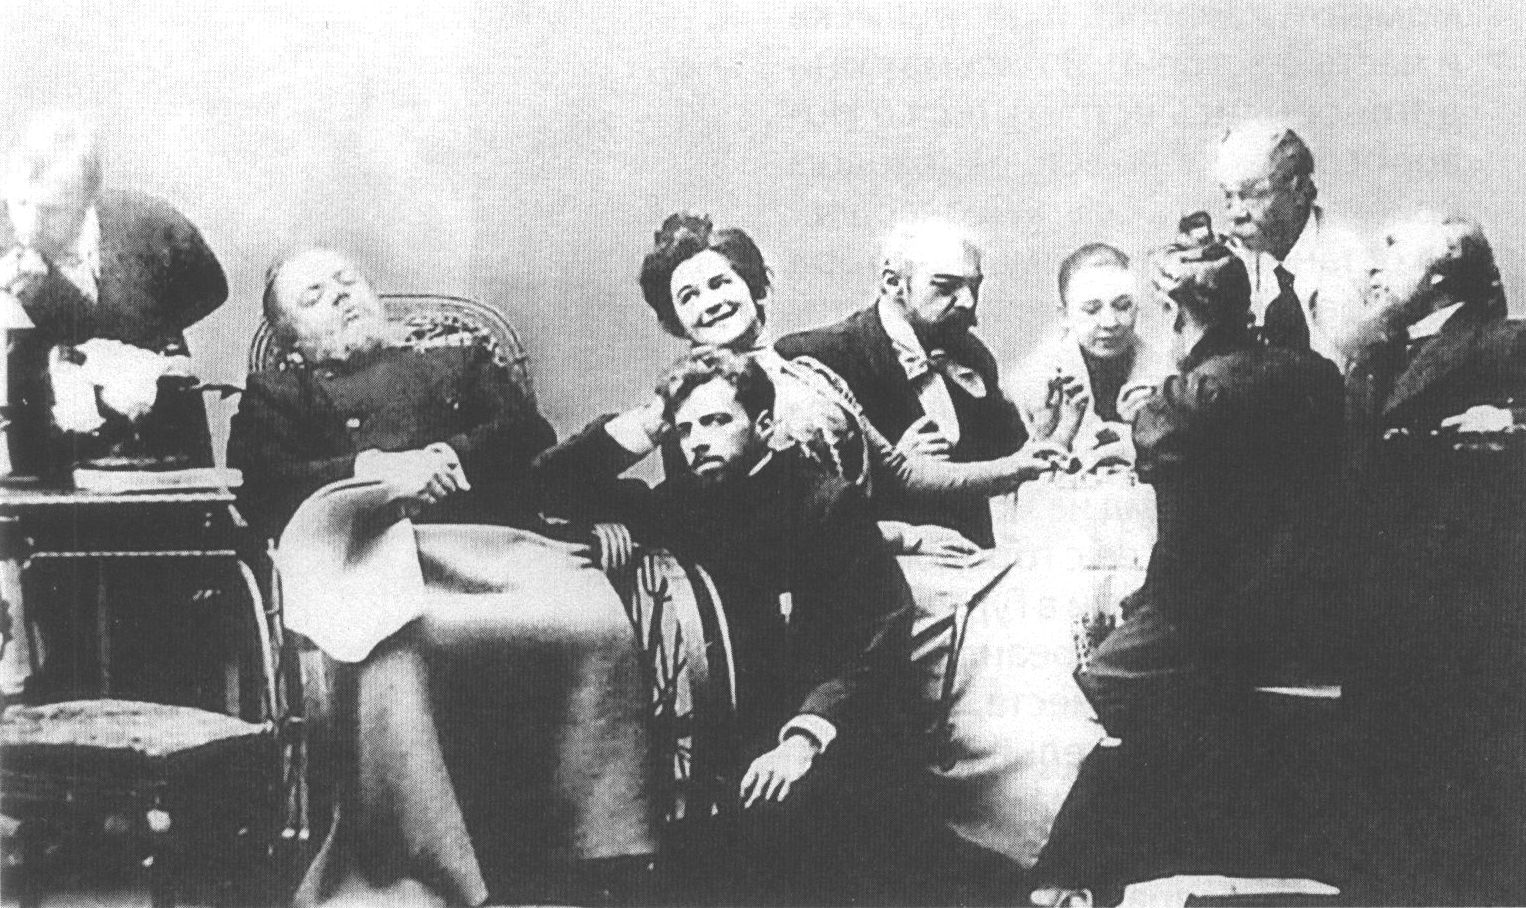 Слева направо: В.В. Лужский, В.Э. Мейерхольд, О.Л. Книппер, К.С. Станиславский, А.Л. Вишневский (справа)